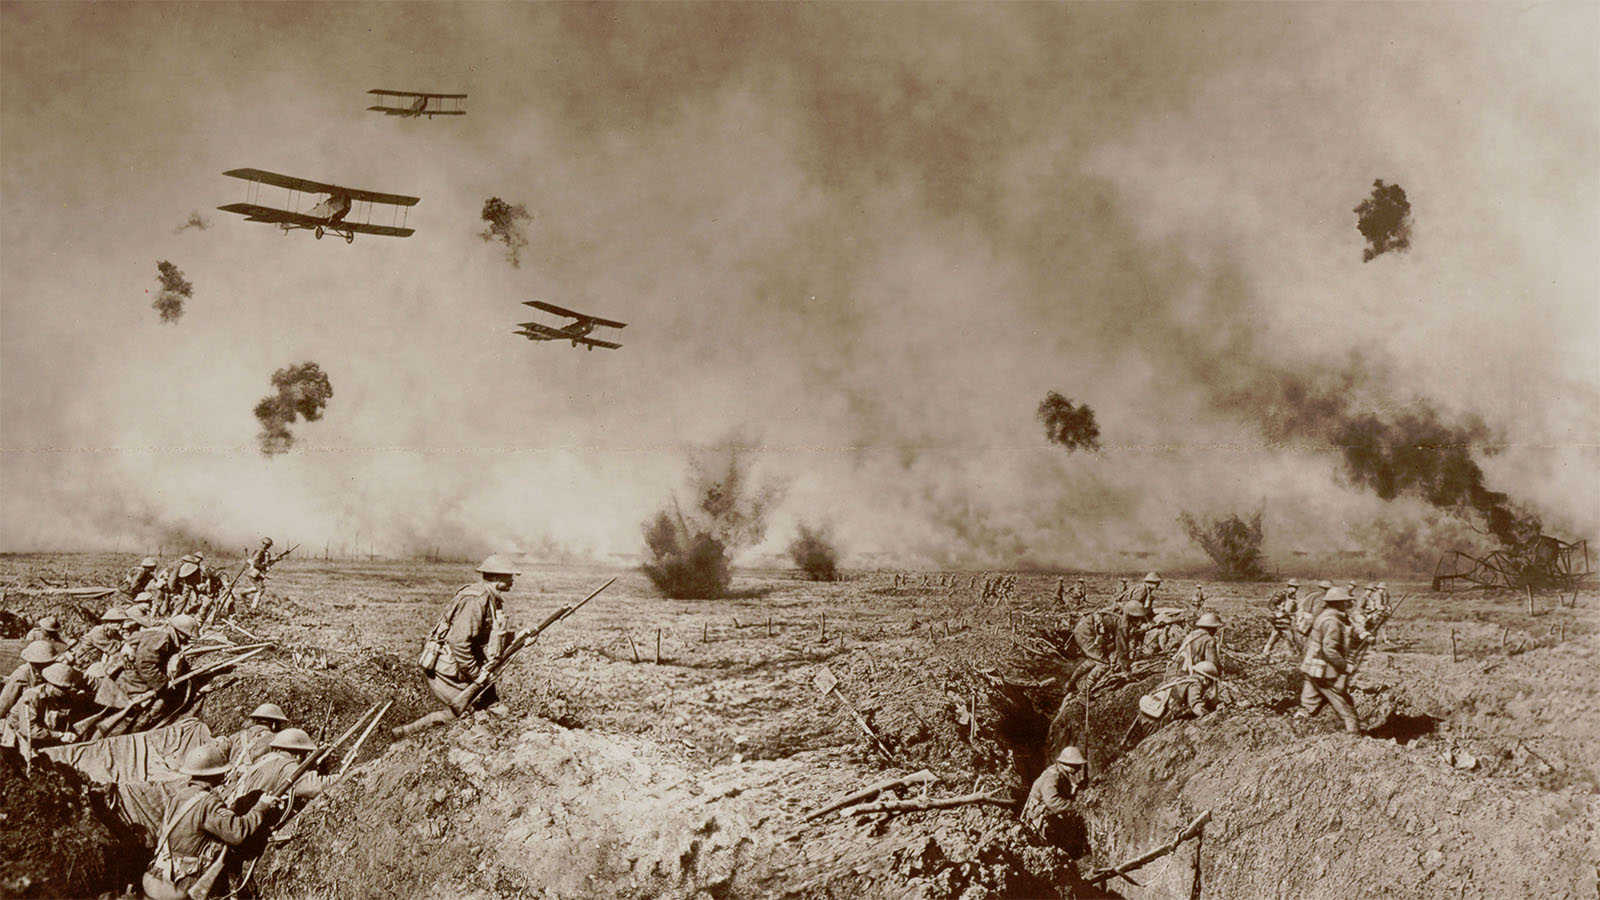 ゲームが人々の歴史認識を変えてしまう、第一次世界大戦を描くBattlefield 1への危惧